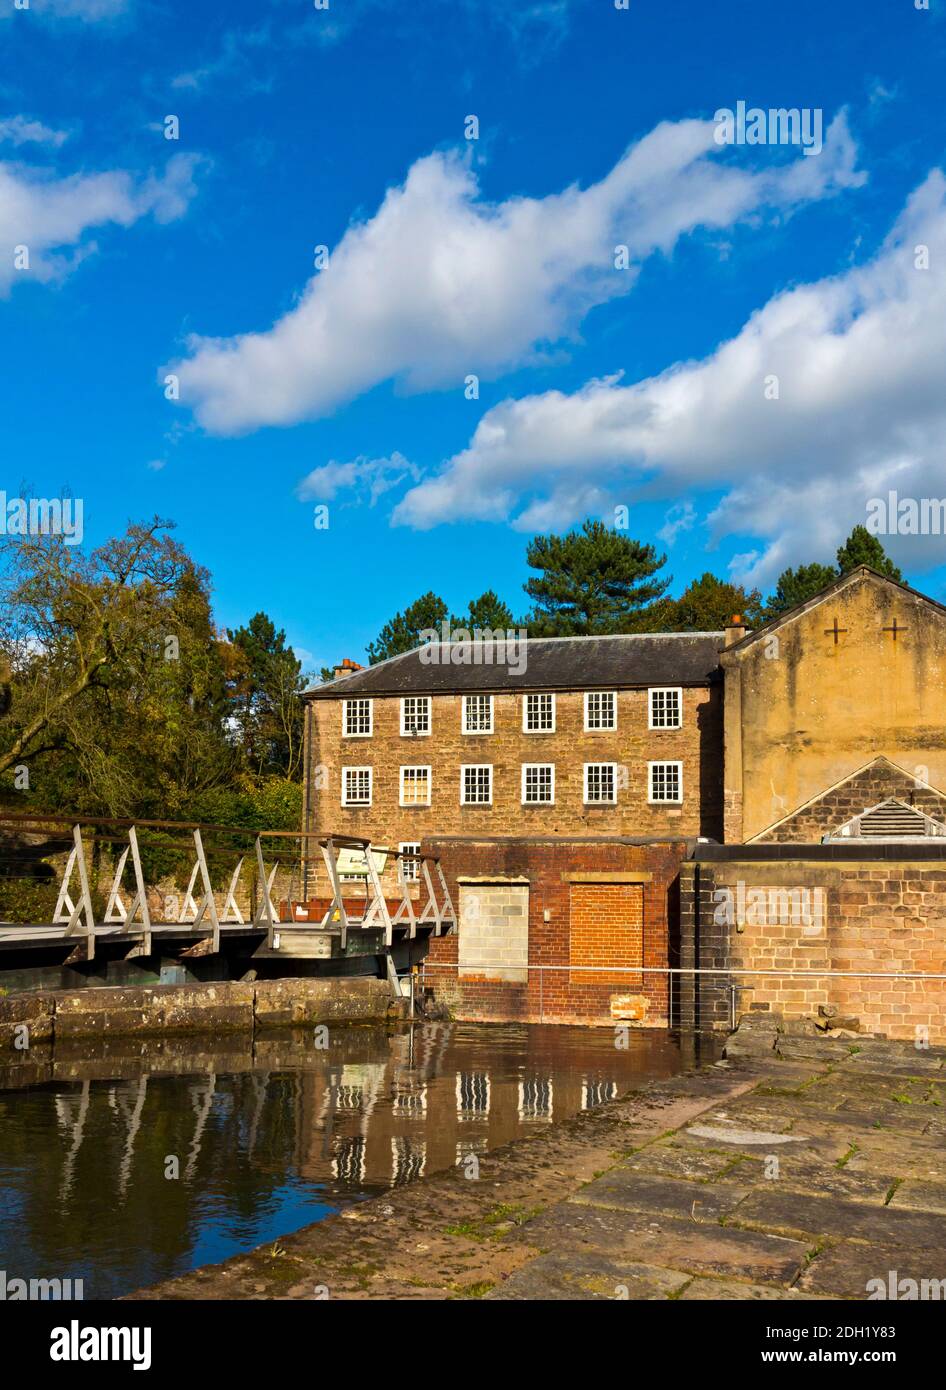 Fabrikgebäude in der Cromford Mill die weltweit erste Wasserversorgungsanlage Baumwollfabrik von Richard Arkwright im Jahr 1771 in Cromford gebaut Derbyshire England Großbritannien Stockfoto